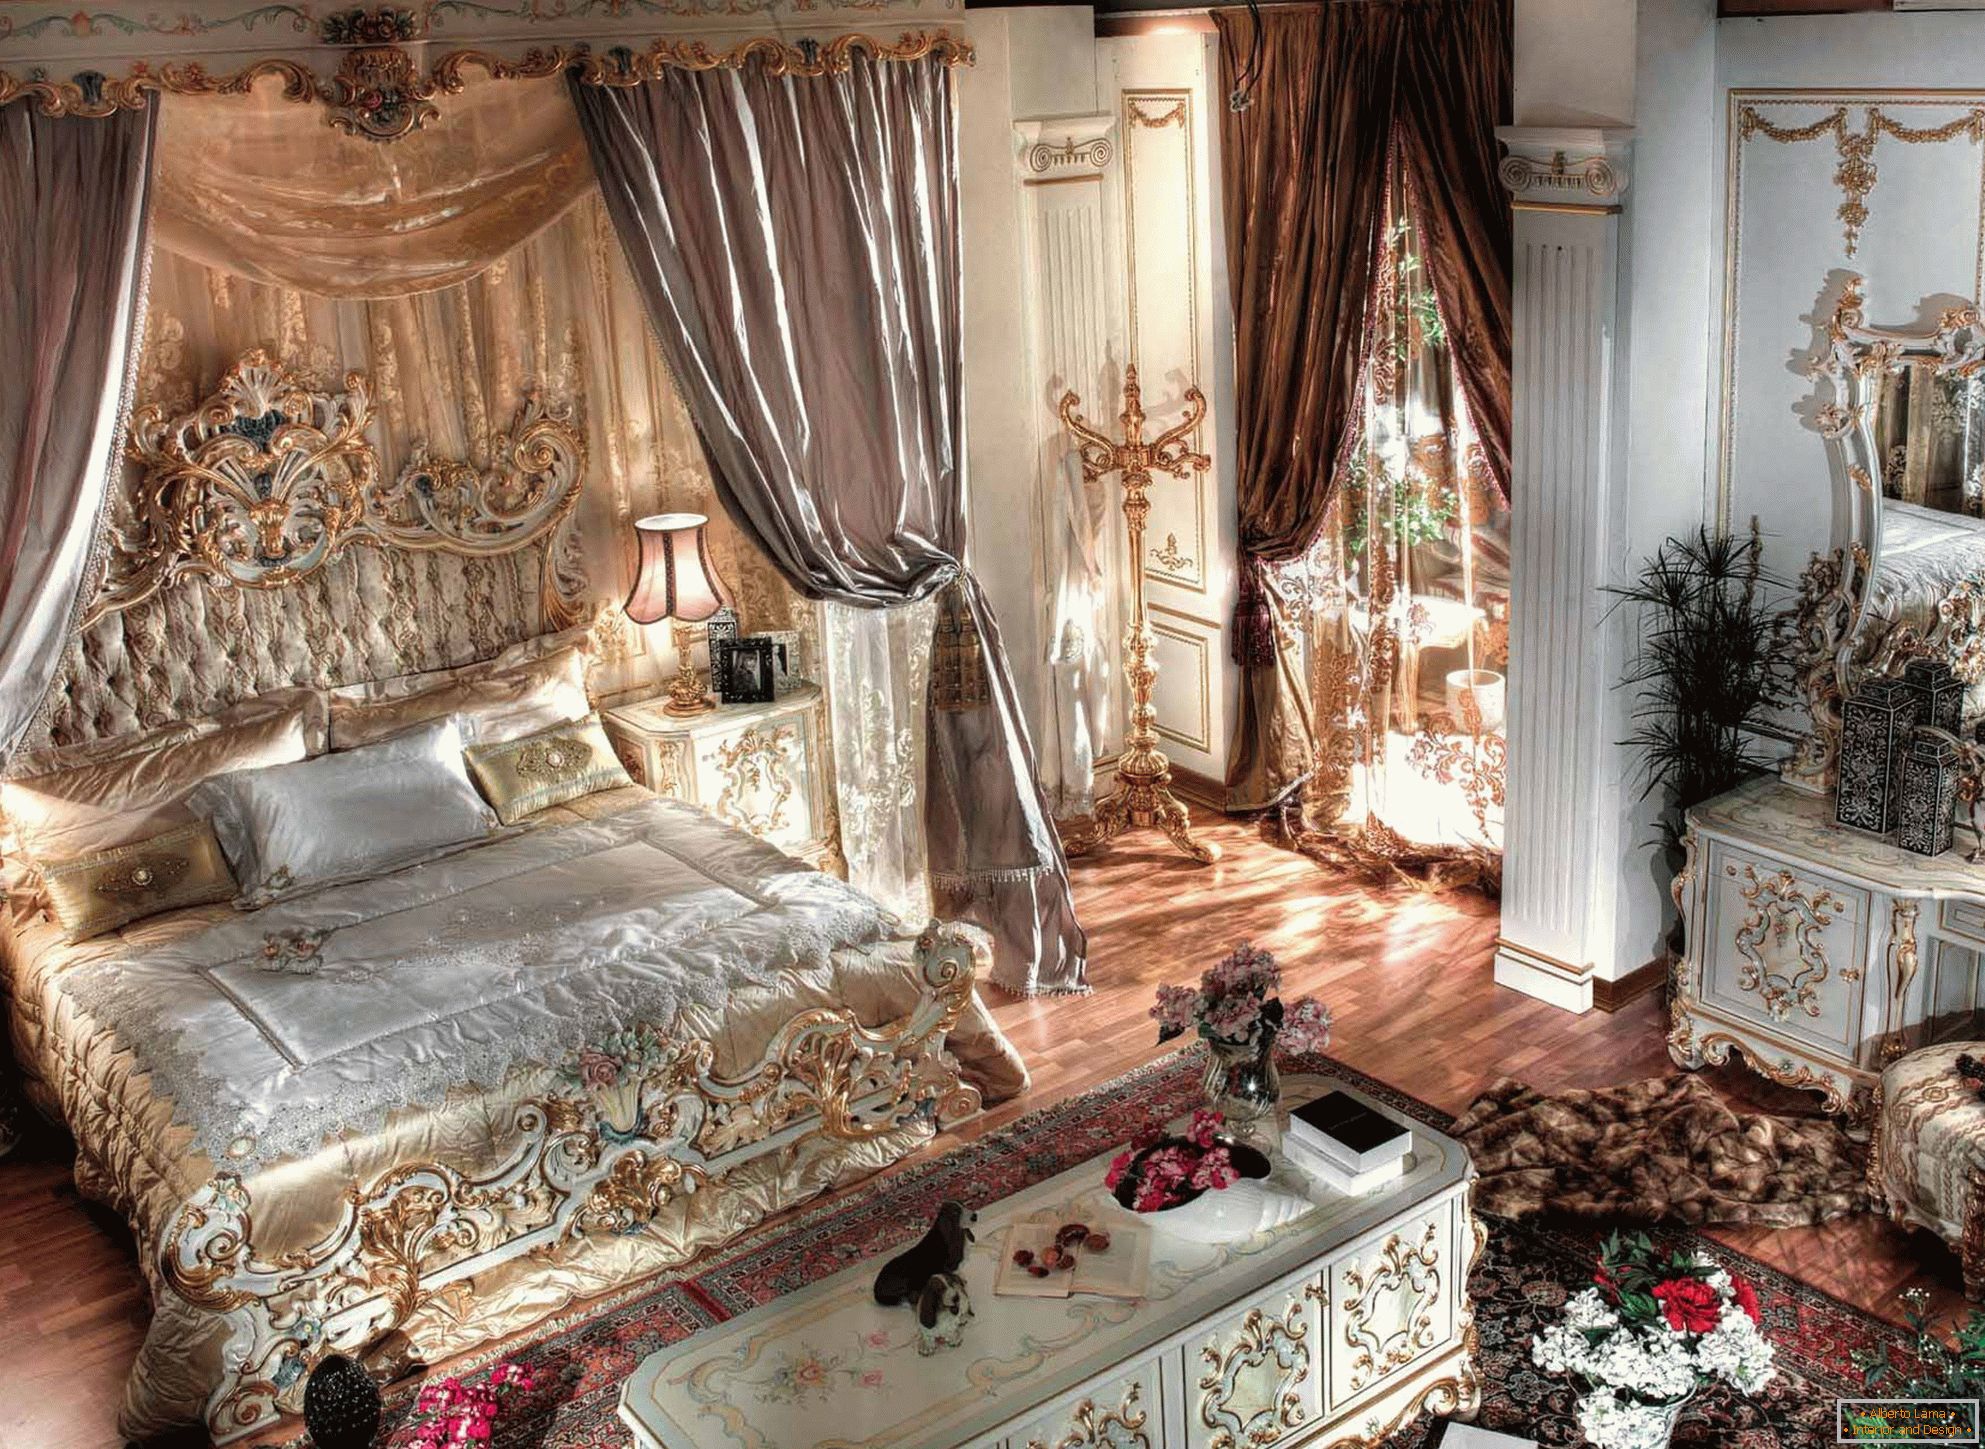 Луксузна барокна спаваћа соба са високим плафонима. У средишту композиције налази се масивни лежај од дрвета са изрезаним леђима.